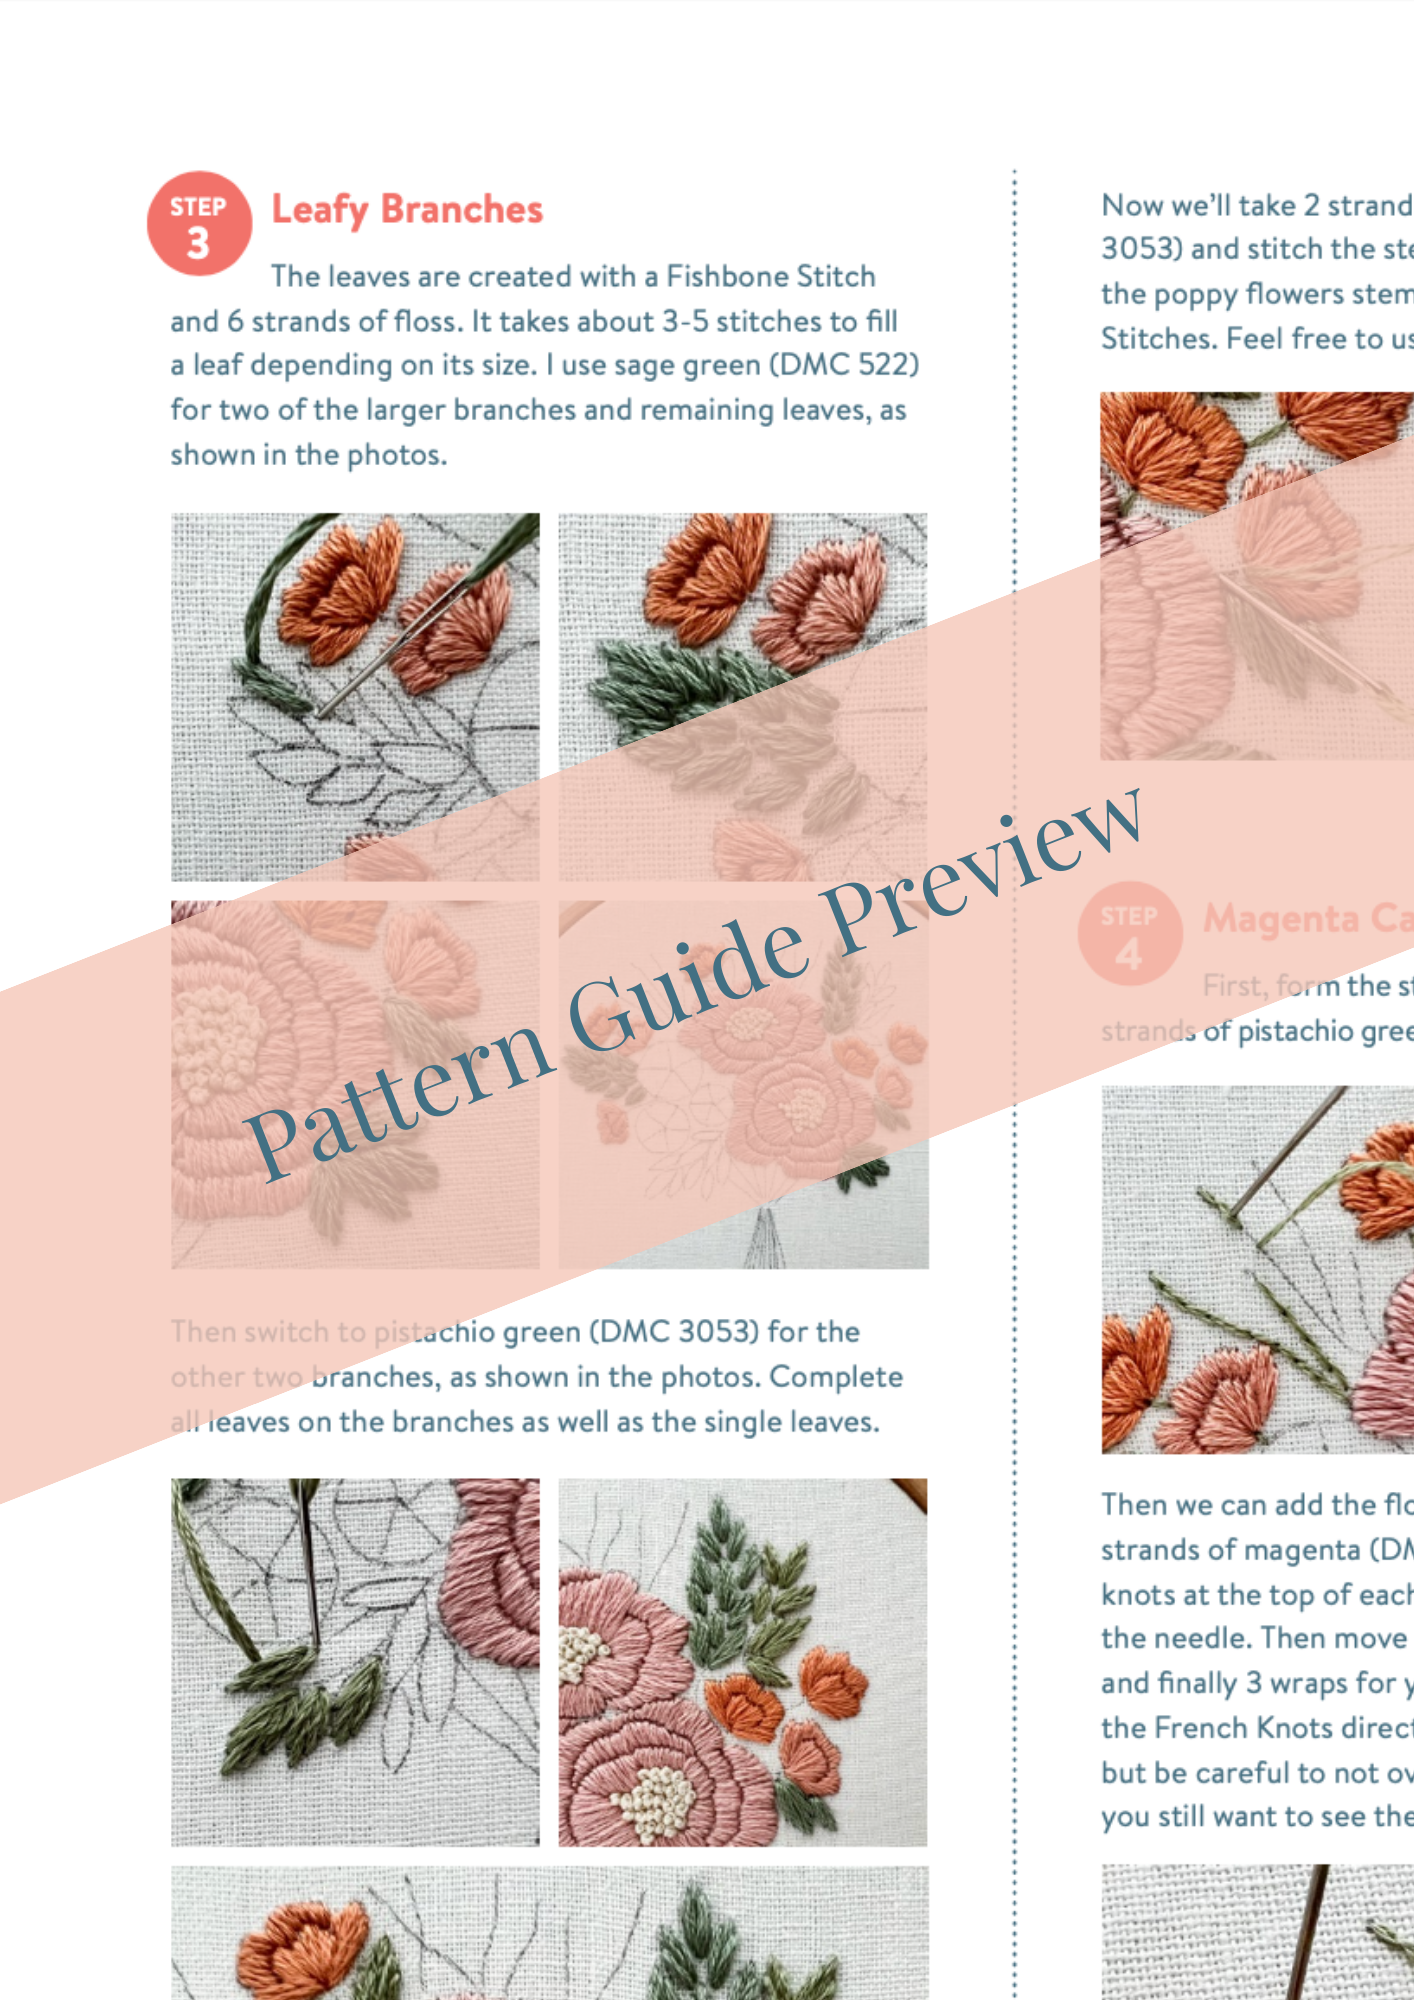 Sweet Bouquet Pattern Kit